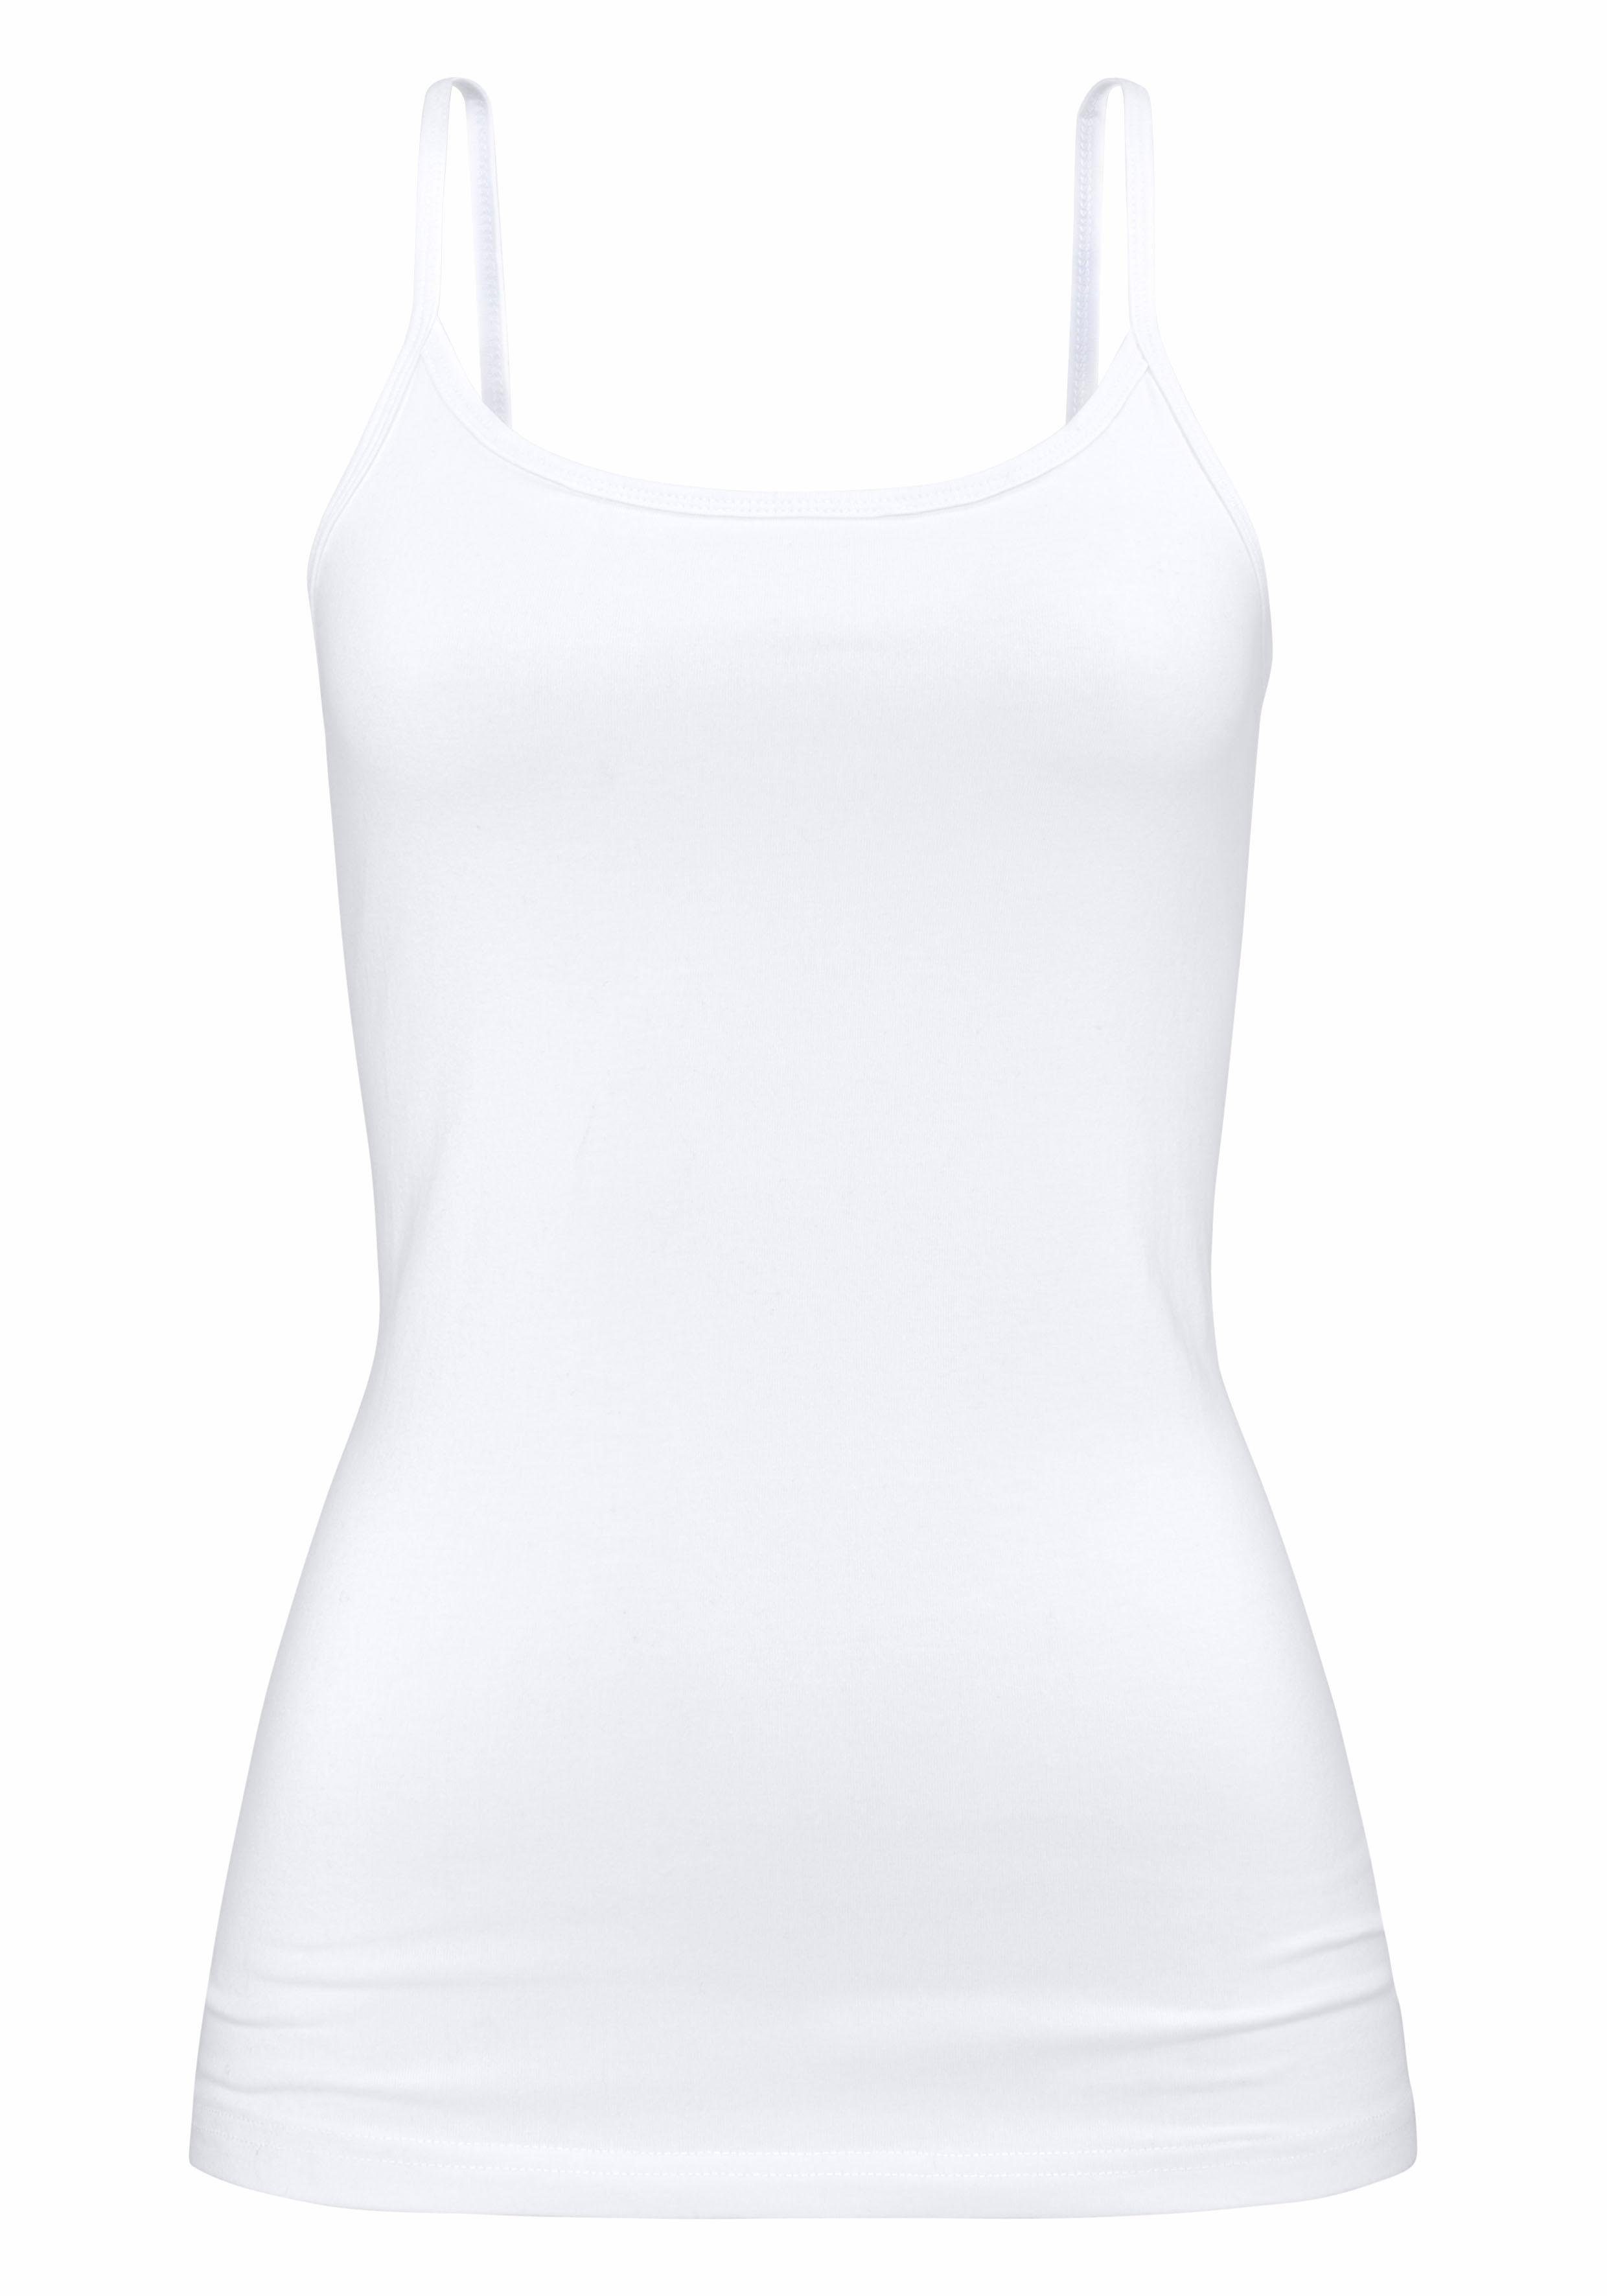 Unterziehshirt (2er-Pack) aus H.I.S elastischer weiß Spaghettiträger-Top, Baumwoll-Qualität, schwarz, Unterhemd